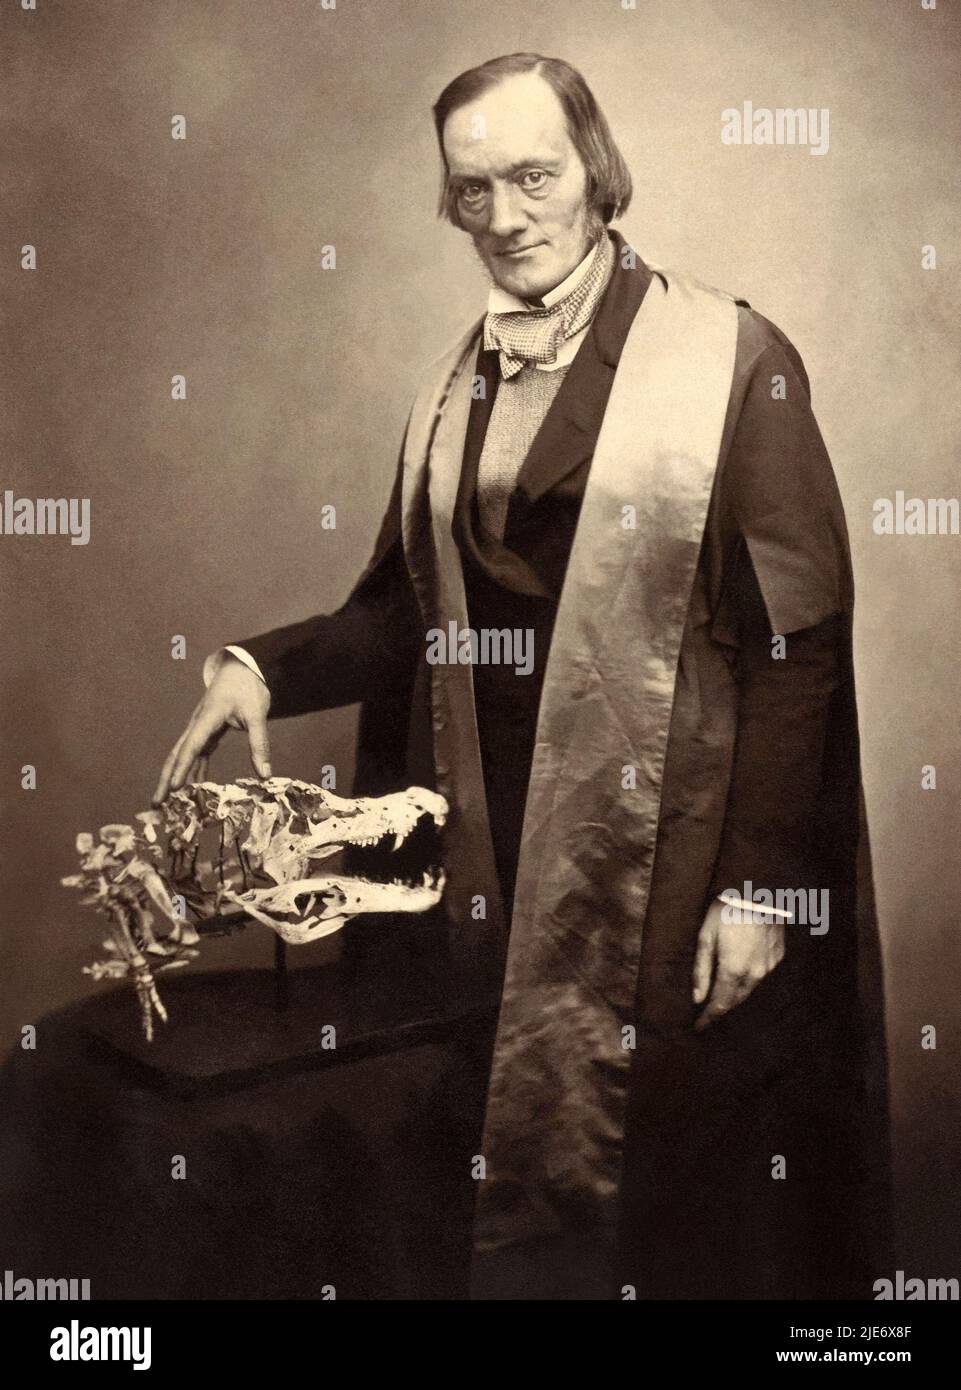 Sir Richard Owen KCB FRS (1804-1892) englischer Biologe, vergleichender Anatom und Paläontologe, der den Begriff dinosaurier prägte, aus dem wir das Wort Dinosaurier ableiten. Owen war ein ausgesprochener Kritiker von Charles Darwins Evolutionstheorie durch natürliche Selektion. Foto: 1856. Stockfoto